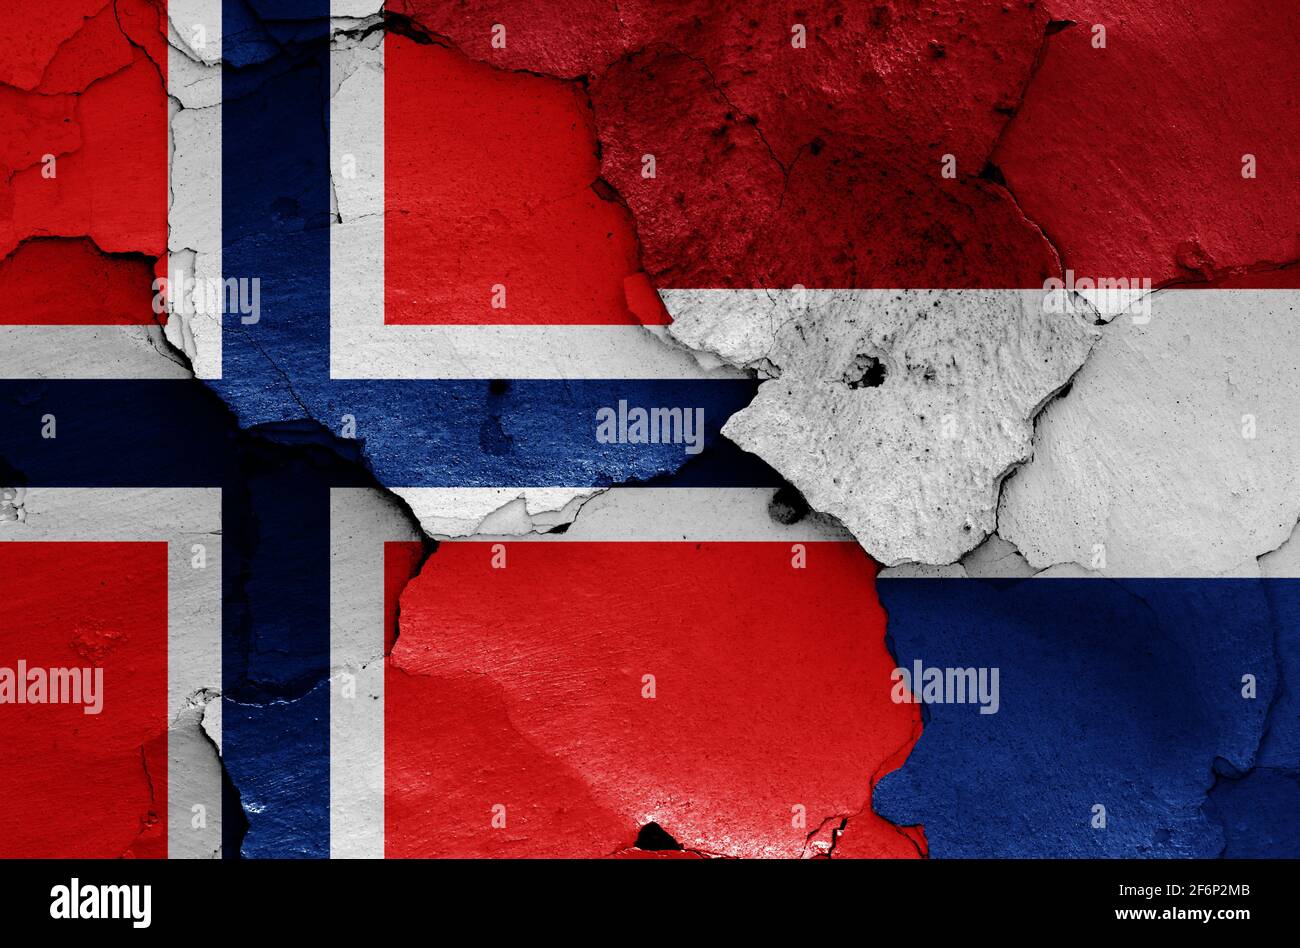 Norvège pays bas Banque de photographies et d'images à haute résolution -  Alamy